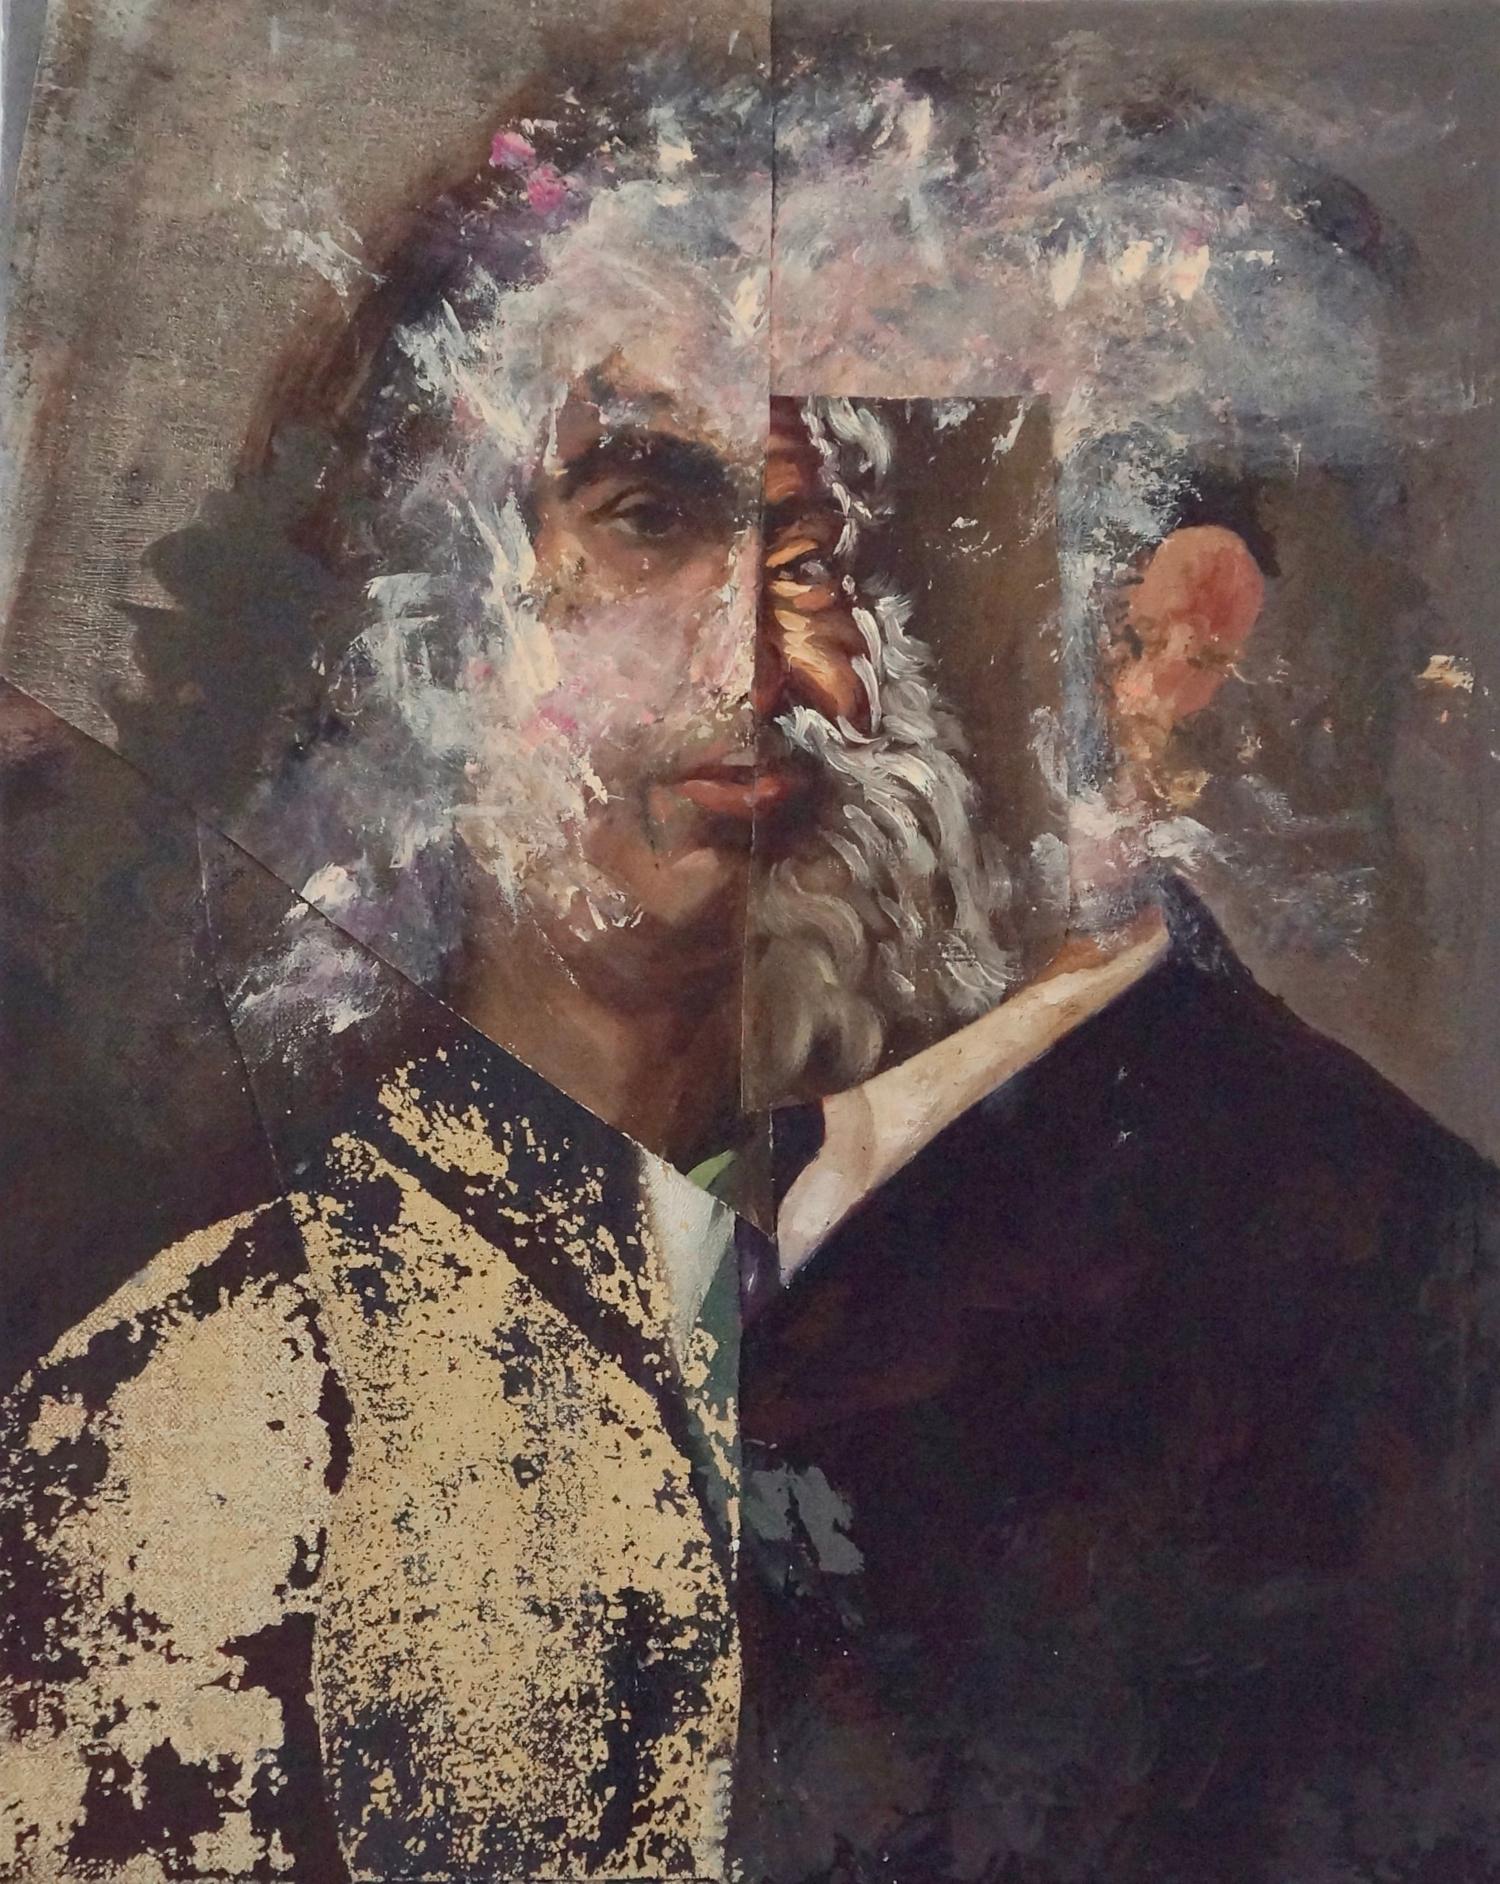 Portrait Painting John Baker - « Old Madman #2 », peinture acrylique, portrait, collage, roses, bruns, noirs, beiges